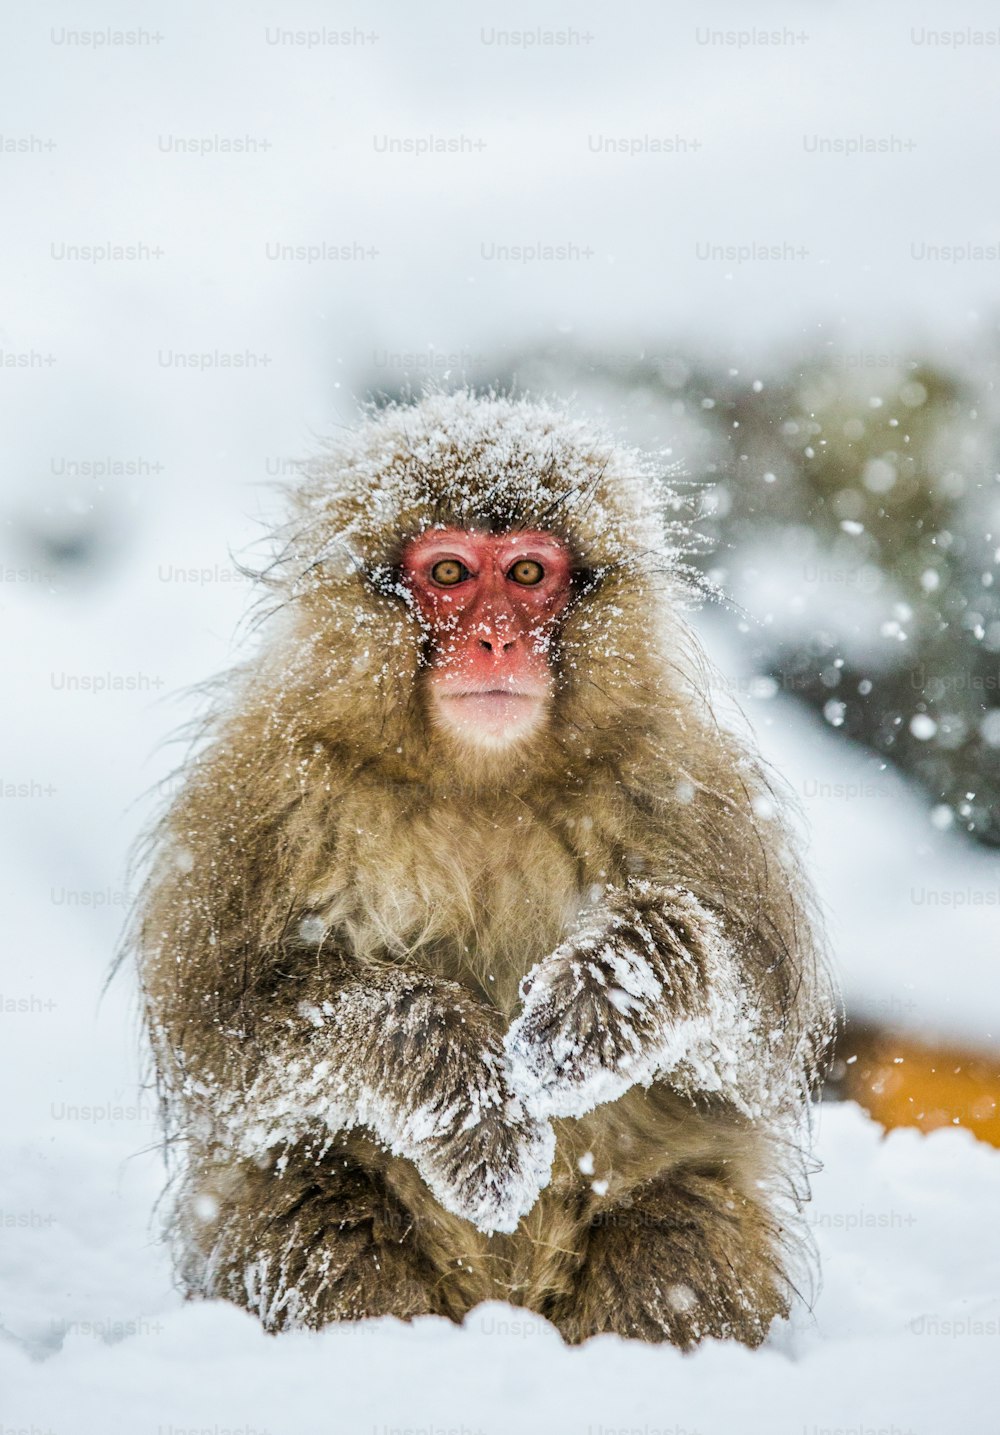 Mono De Nieve Macaco Japonés Japón - Foto gratis en Pixabay - Pixabay